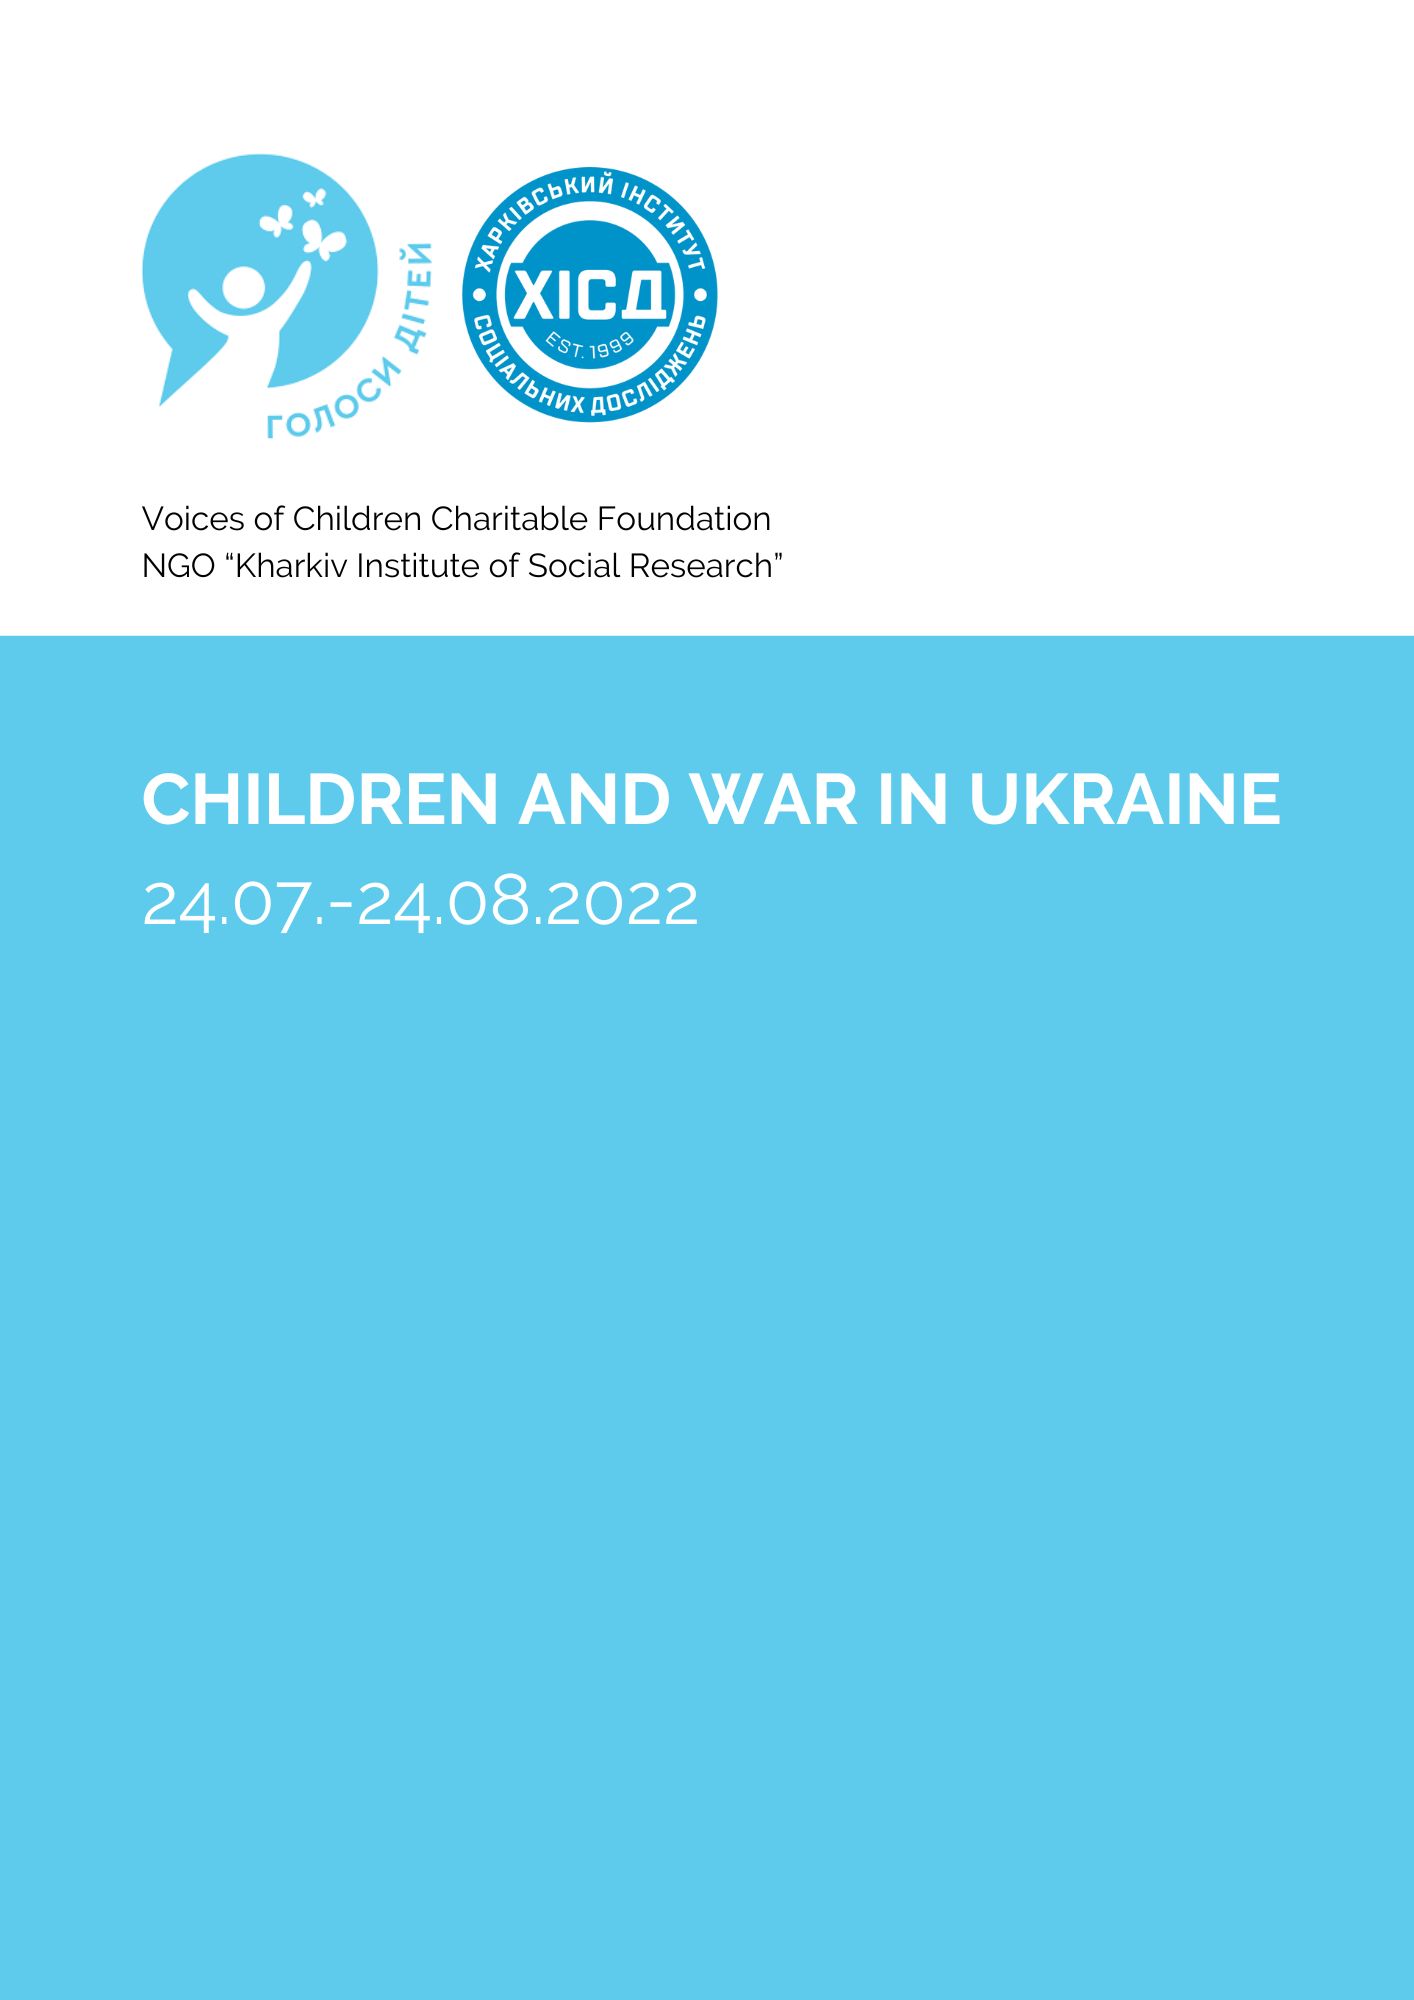 Children and the war in Ukraine 24.07.-24.08.2022